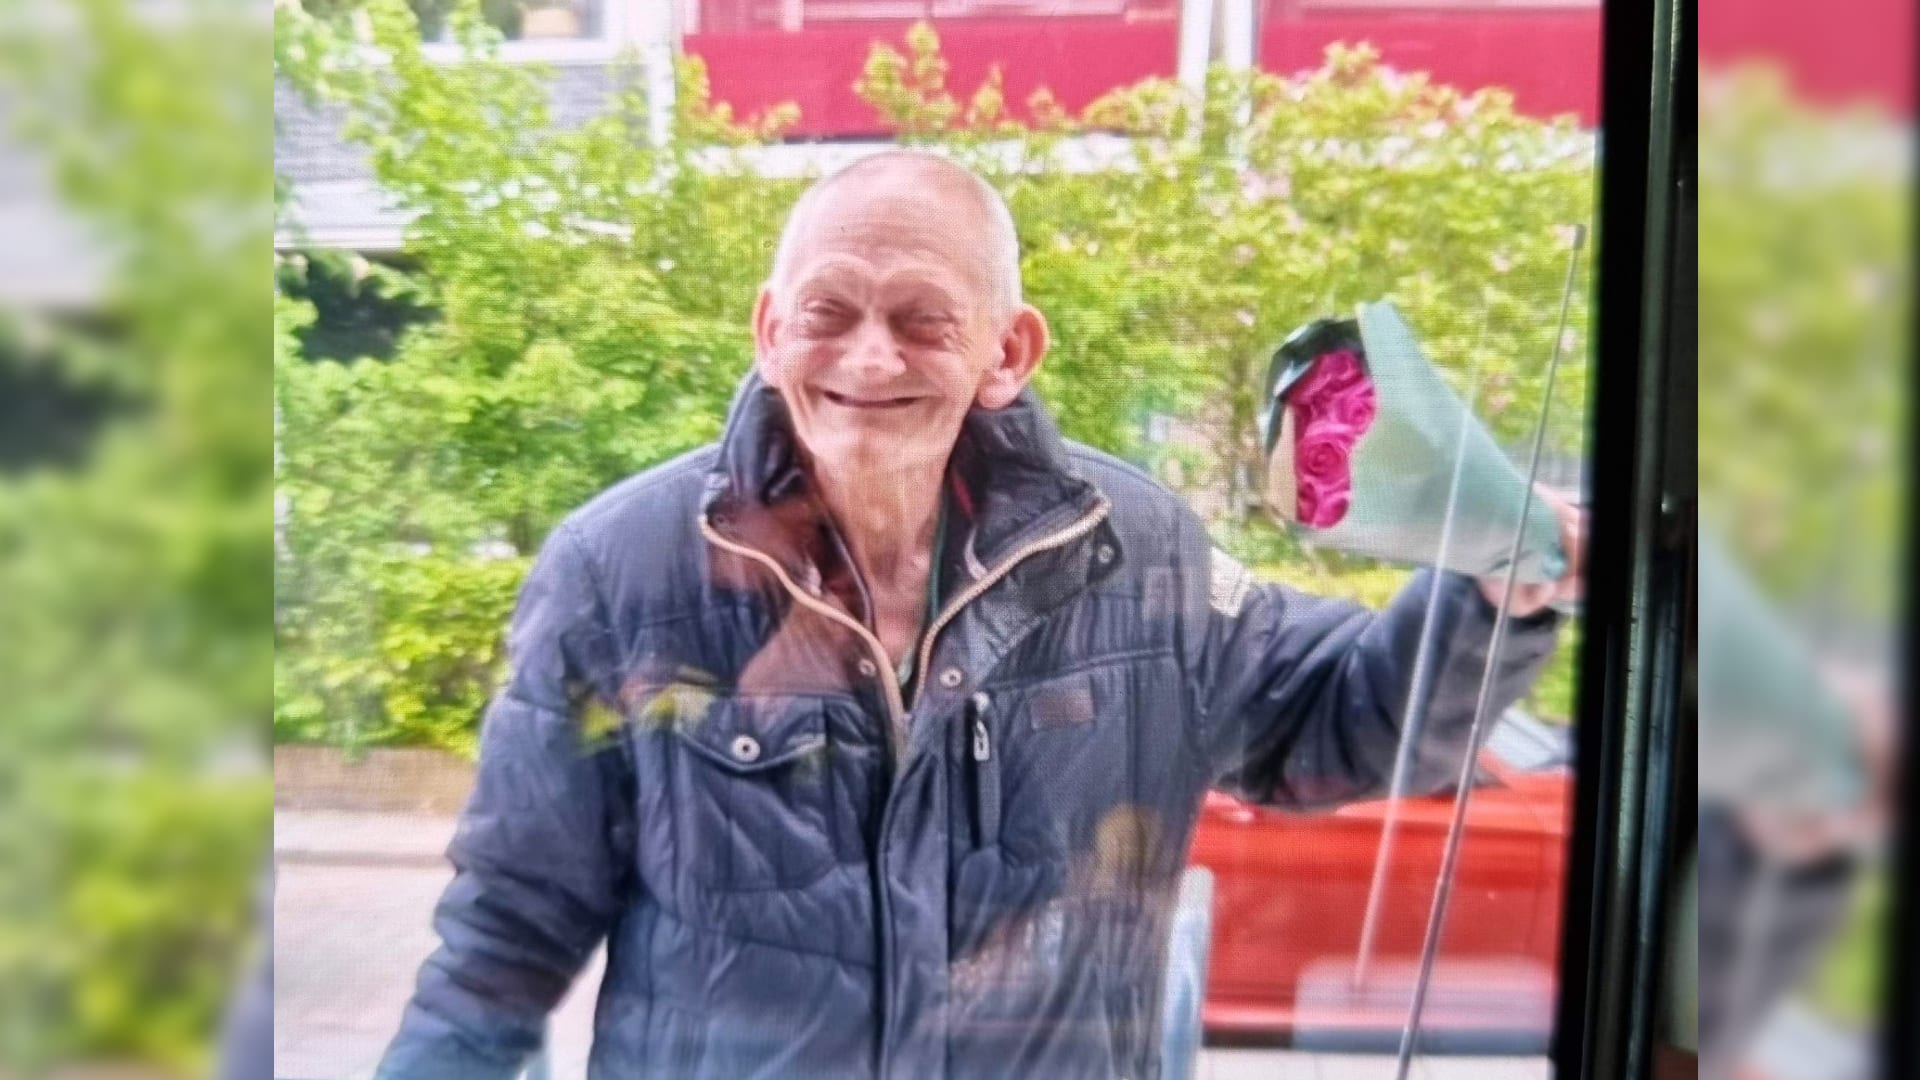 Ernstige zorgen om vermiste Frans (72): 'Hij is verstandelijk beperkt en erg in de war' 